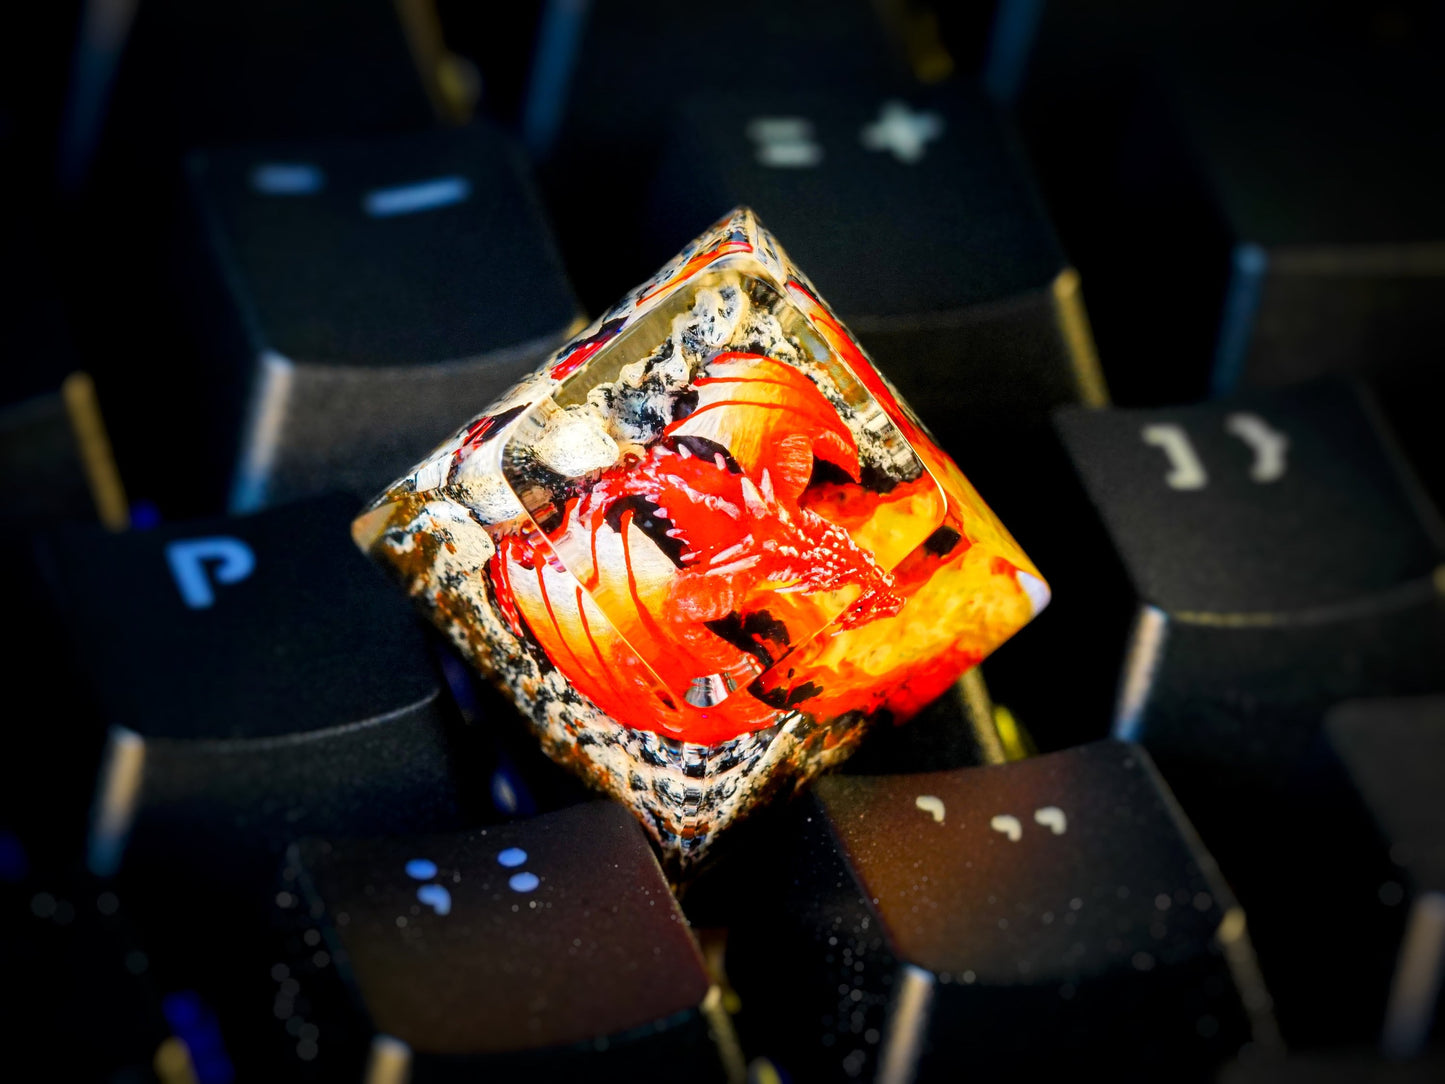 Red Dragon Keycap- Fire Dragon Keycap- Artisan Keycap- Keycap For Cherry MX Keyboard - Datkey Studio